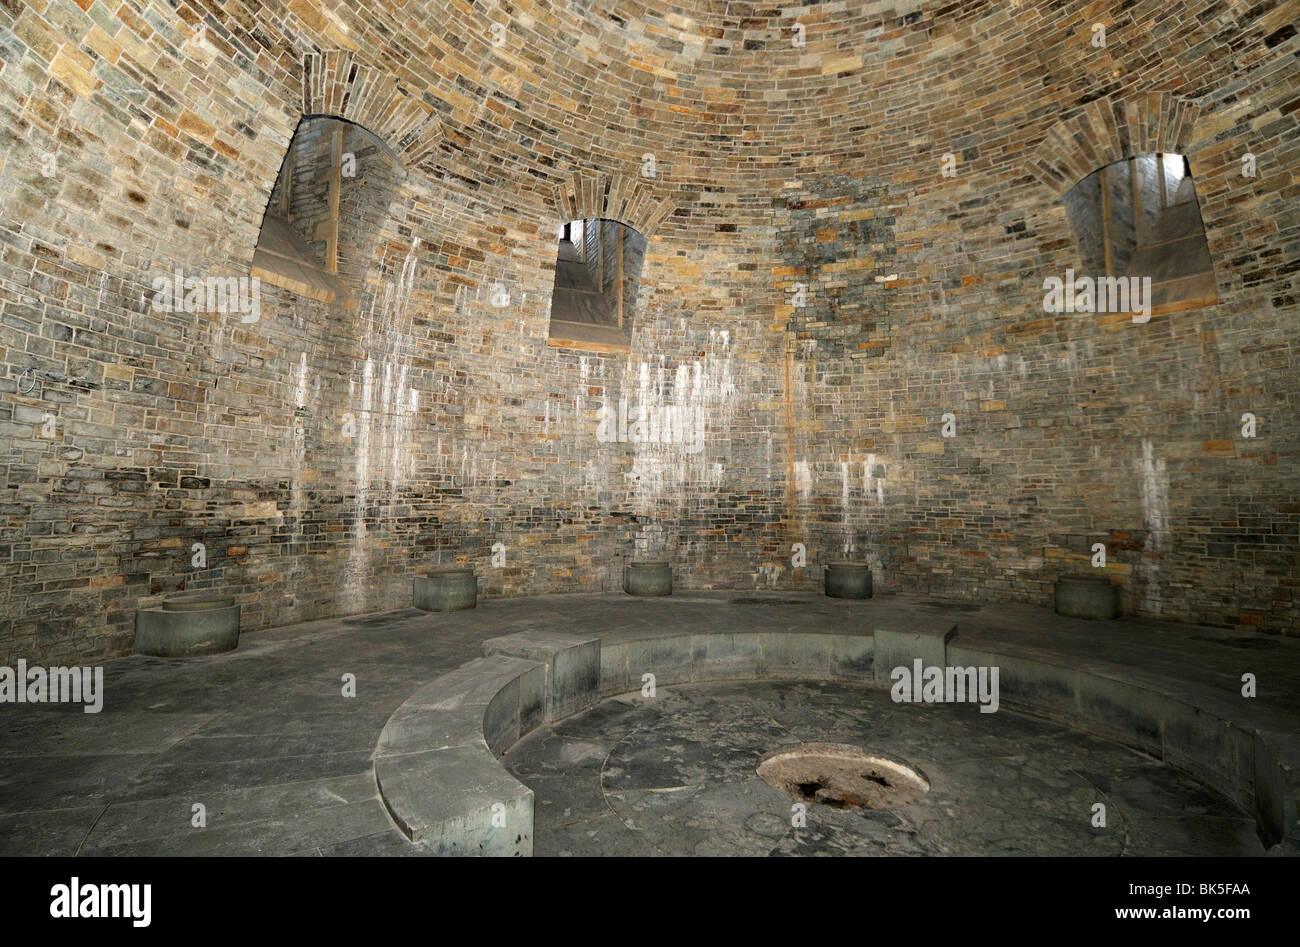 Total 42+ images wewelsburg castle interior - br.thptnvk.edu.vn